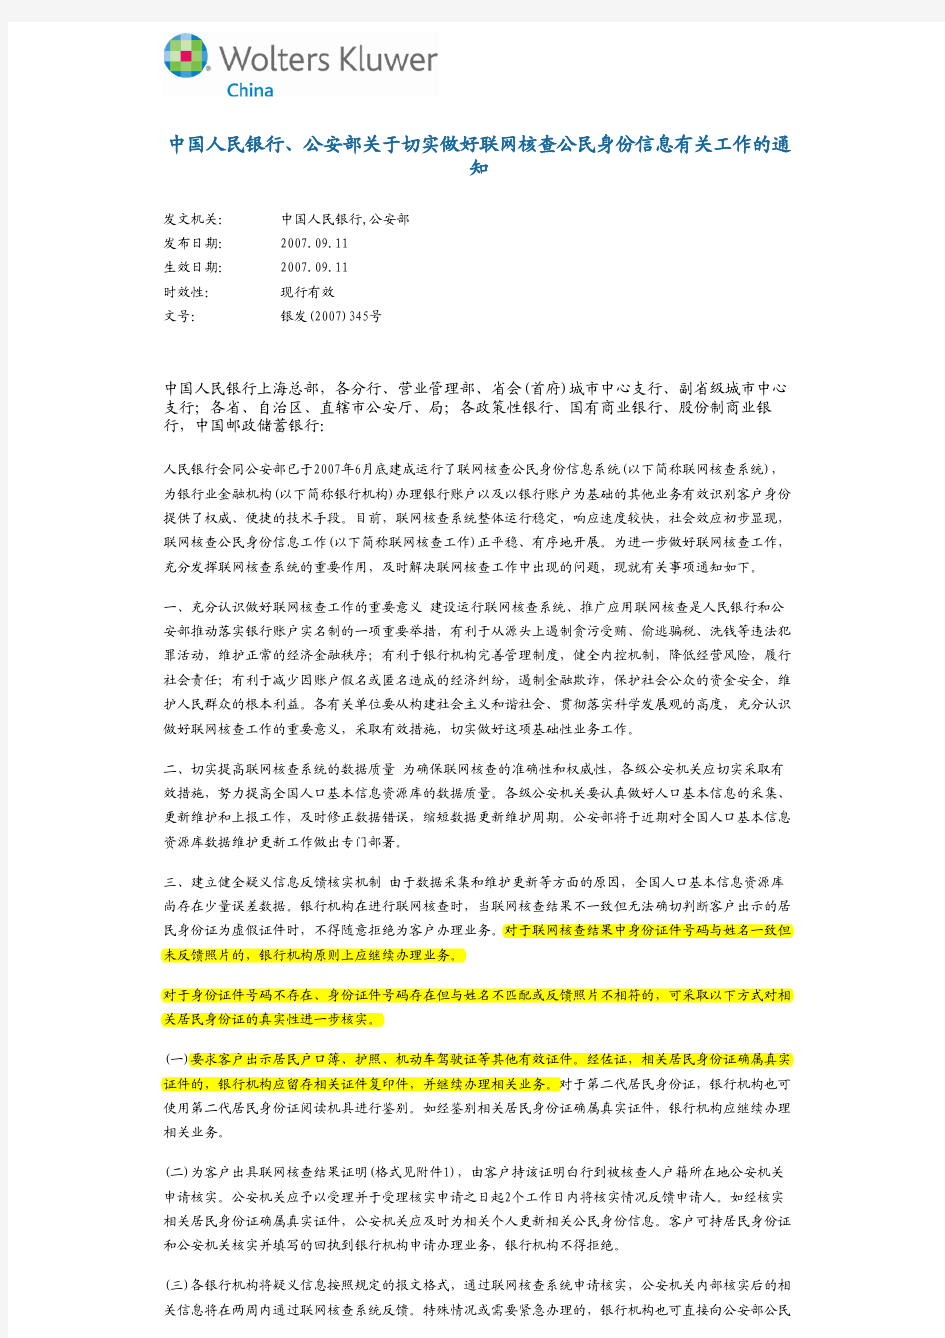 中国人民银行、公安部 银发(2007)345号--关于切实做好联网核查公民身份信息有关工作的通知